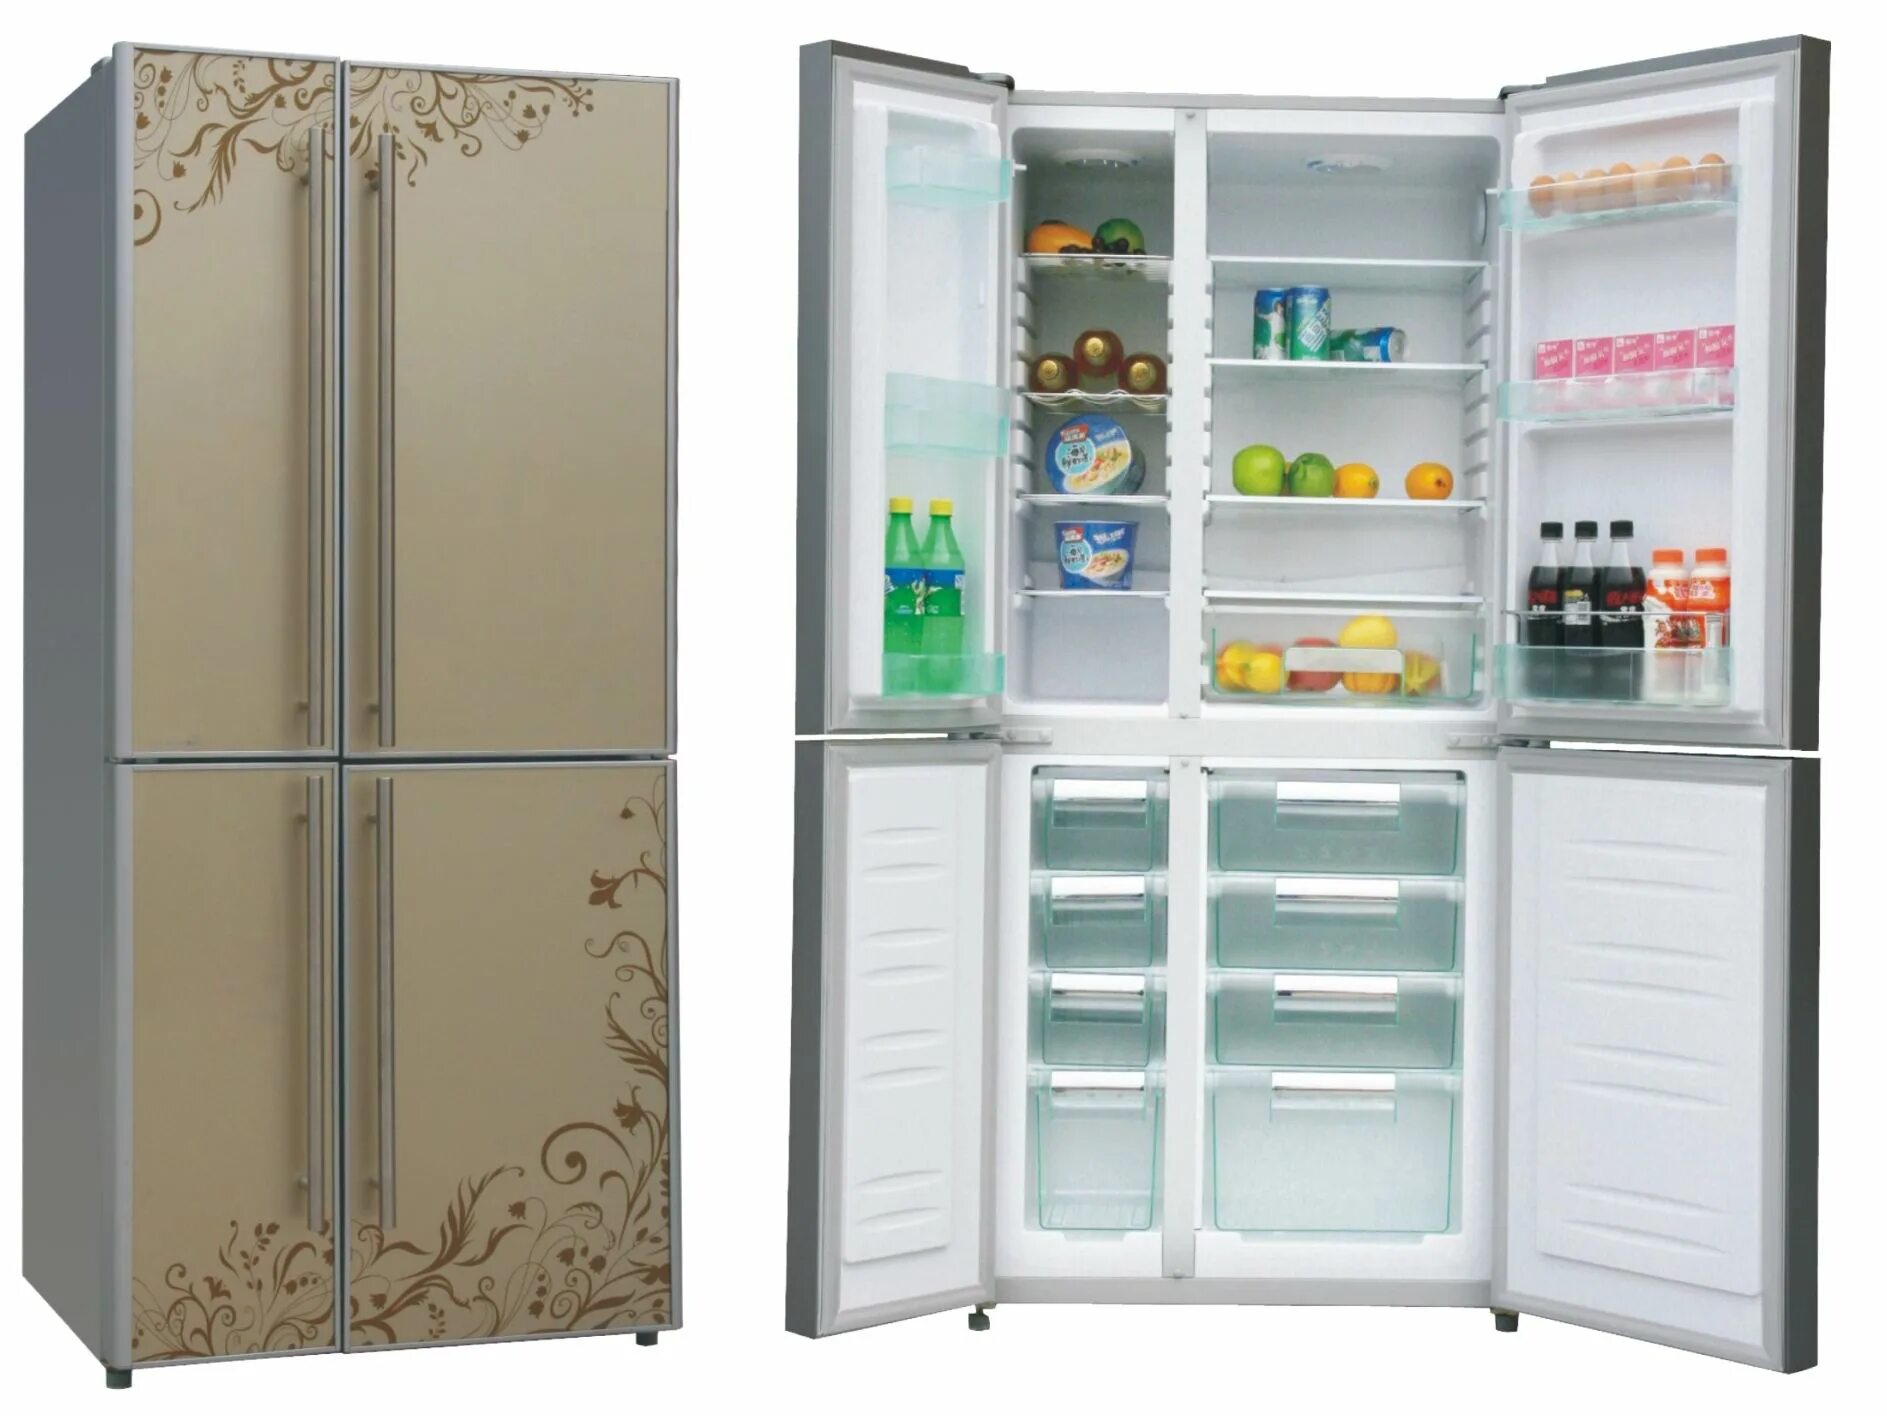 В каких магазинах можно купить холодильники. Холодильник (Side-by-Side) Ascoli acdb520wib. Холодильник (Side-by-Side) LG GC-q247cbdc. Холодильник Side by Side с большой морозилкой. Холодильник (Side-by-Side) Thomson ssc30ei32.